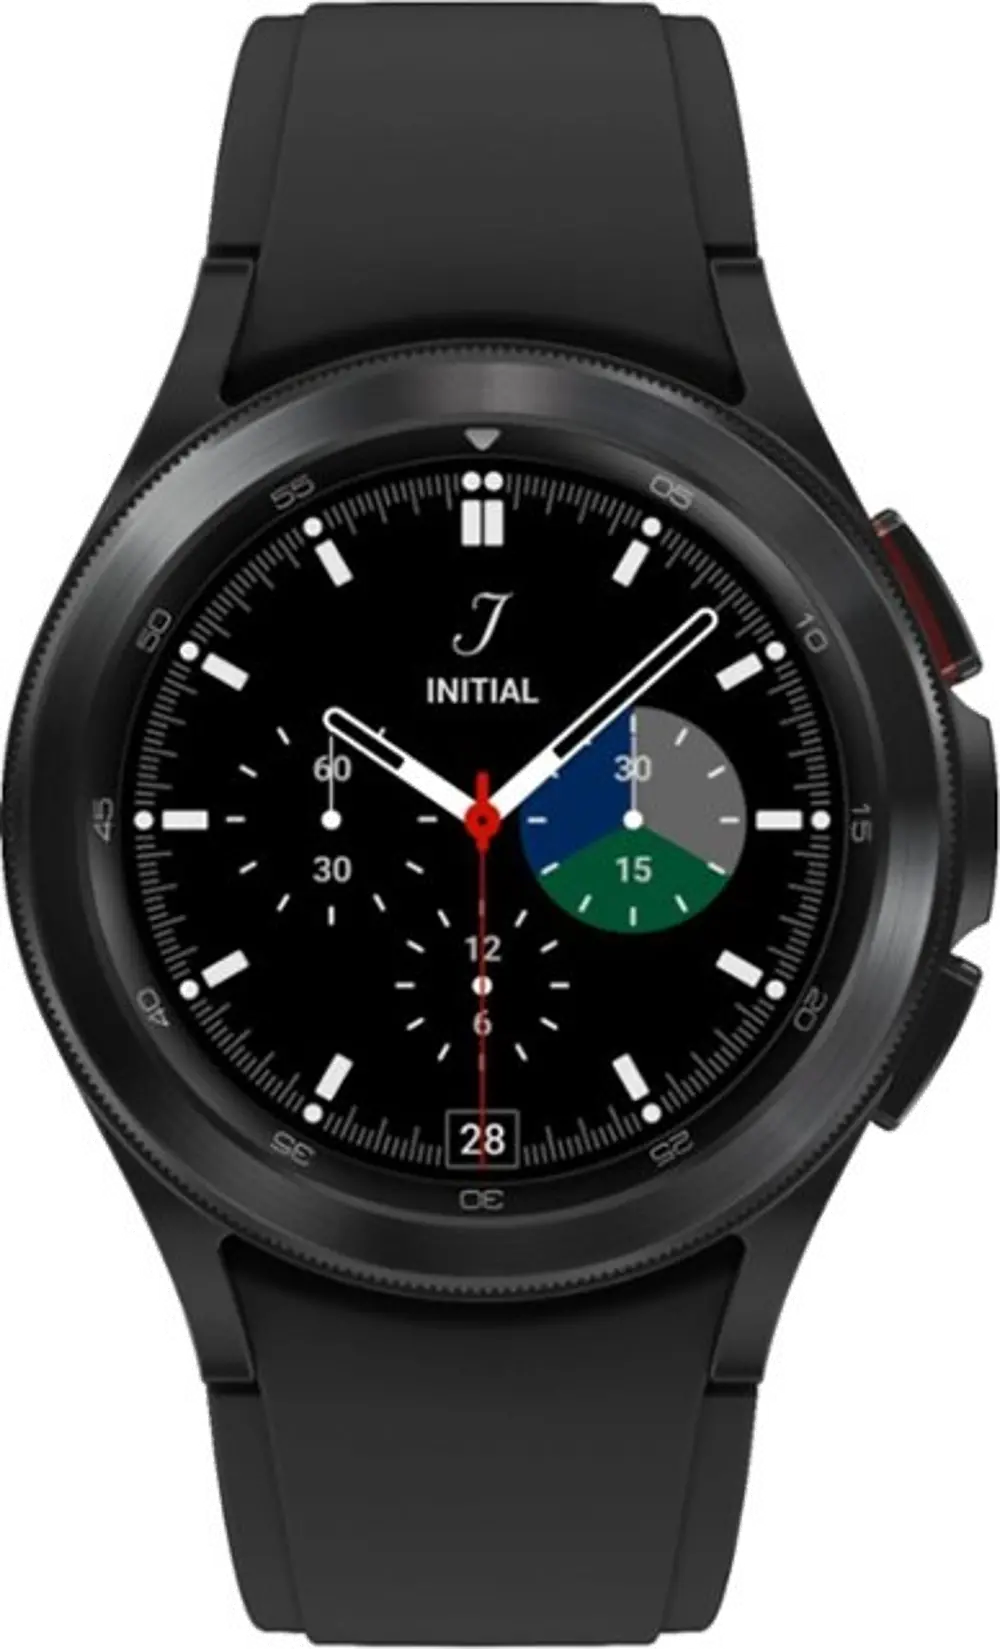 SM-R880NZKAXAA Galaxy 42mm Watch4 Classic - Black-1